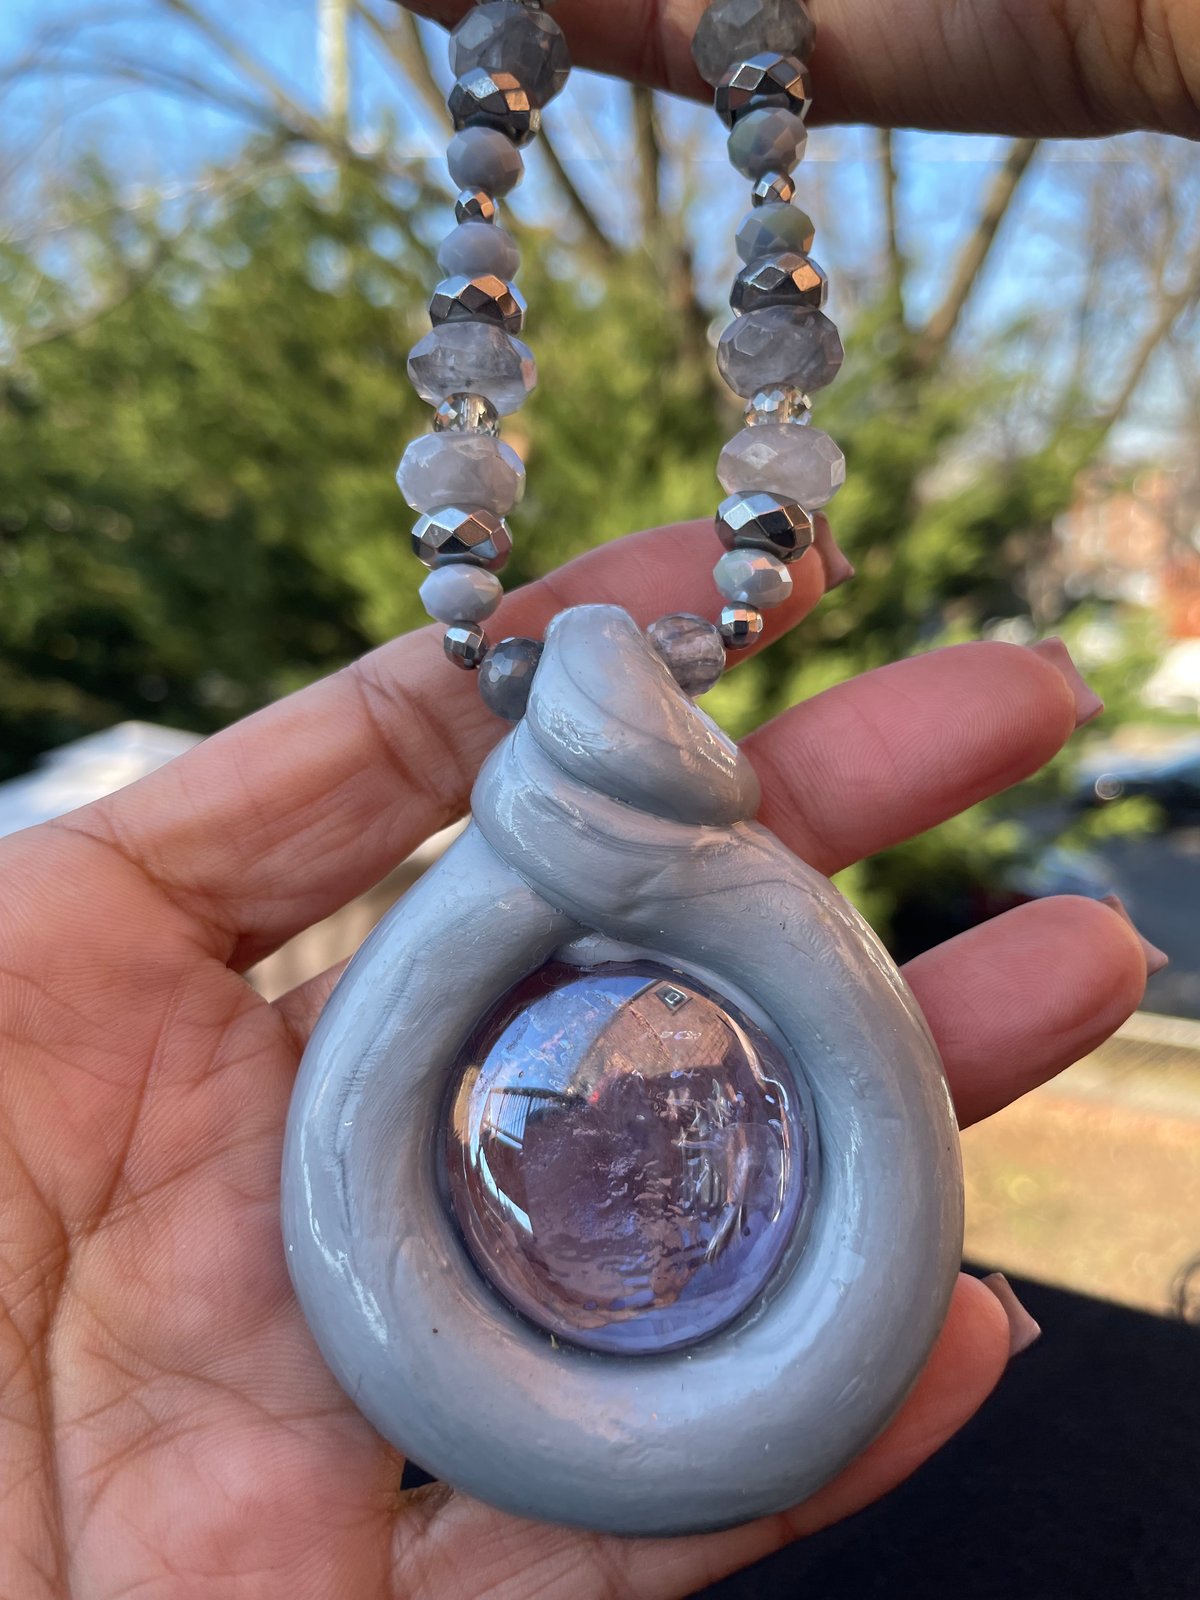 Grey/silver “Doo-nut” necklace w/Clear glass stone